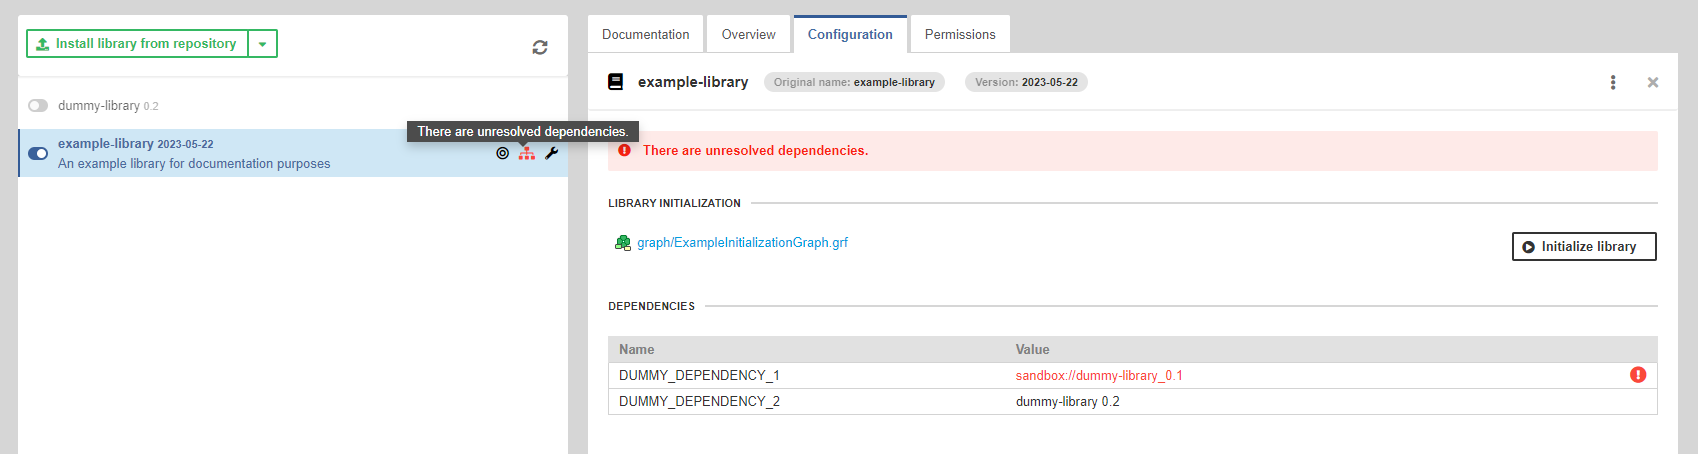 library dependencies